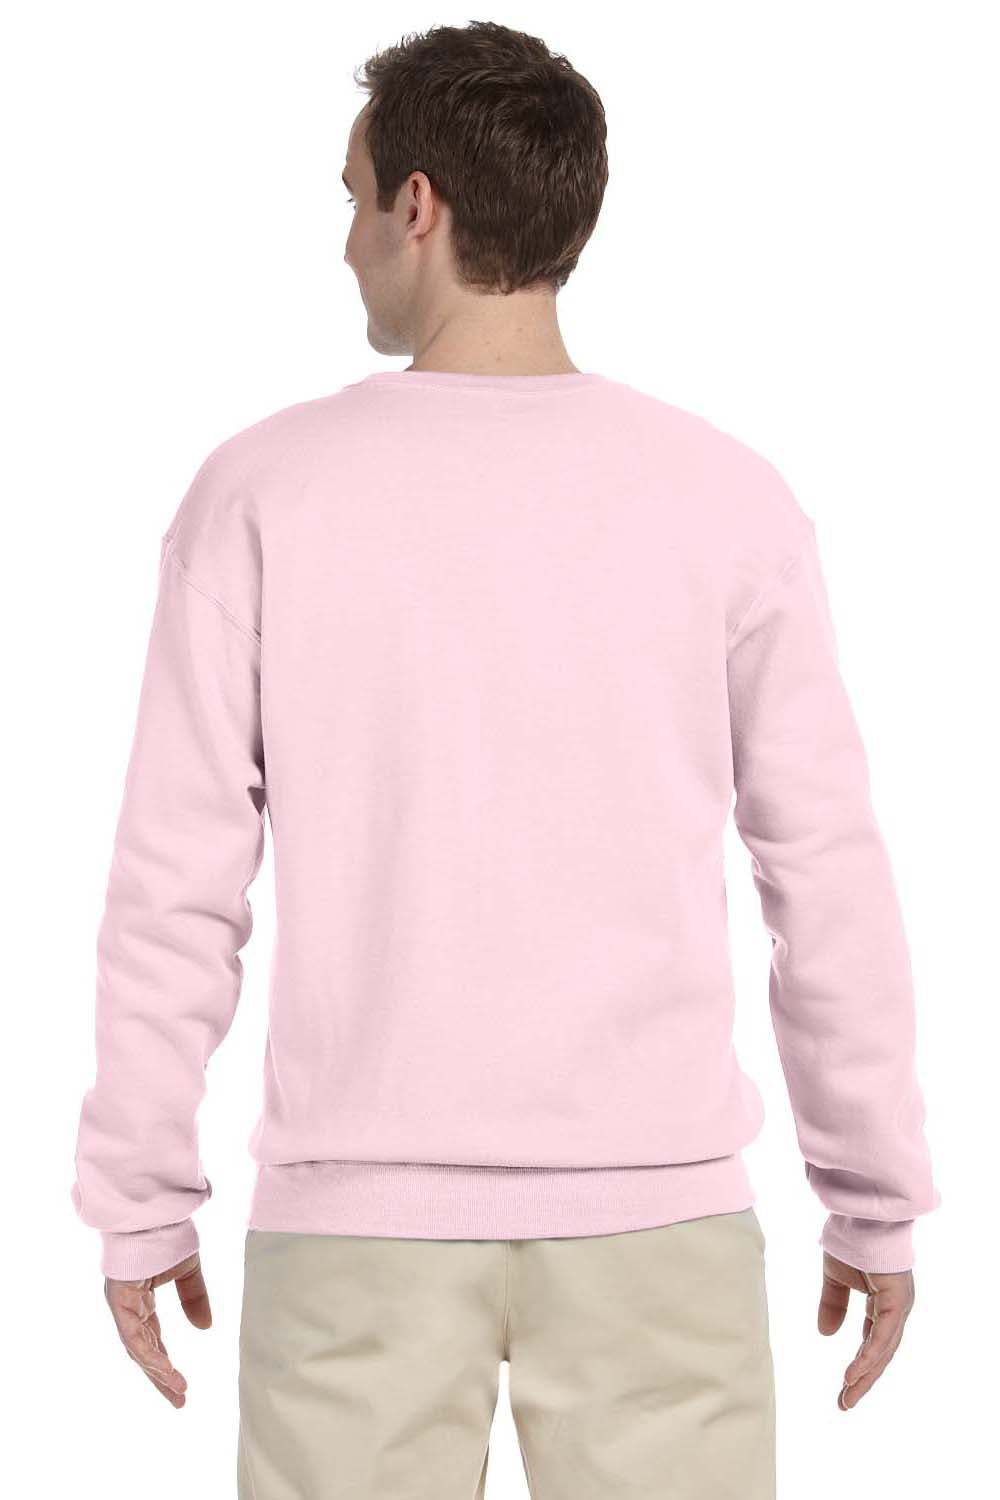 Jerzees 562 Mens NuBlend Fleece Crewneck Sweatshirt Classic Pink Back